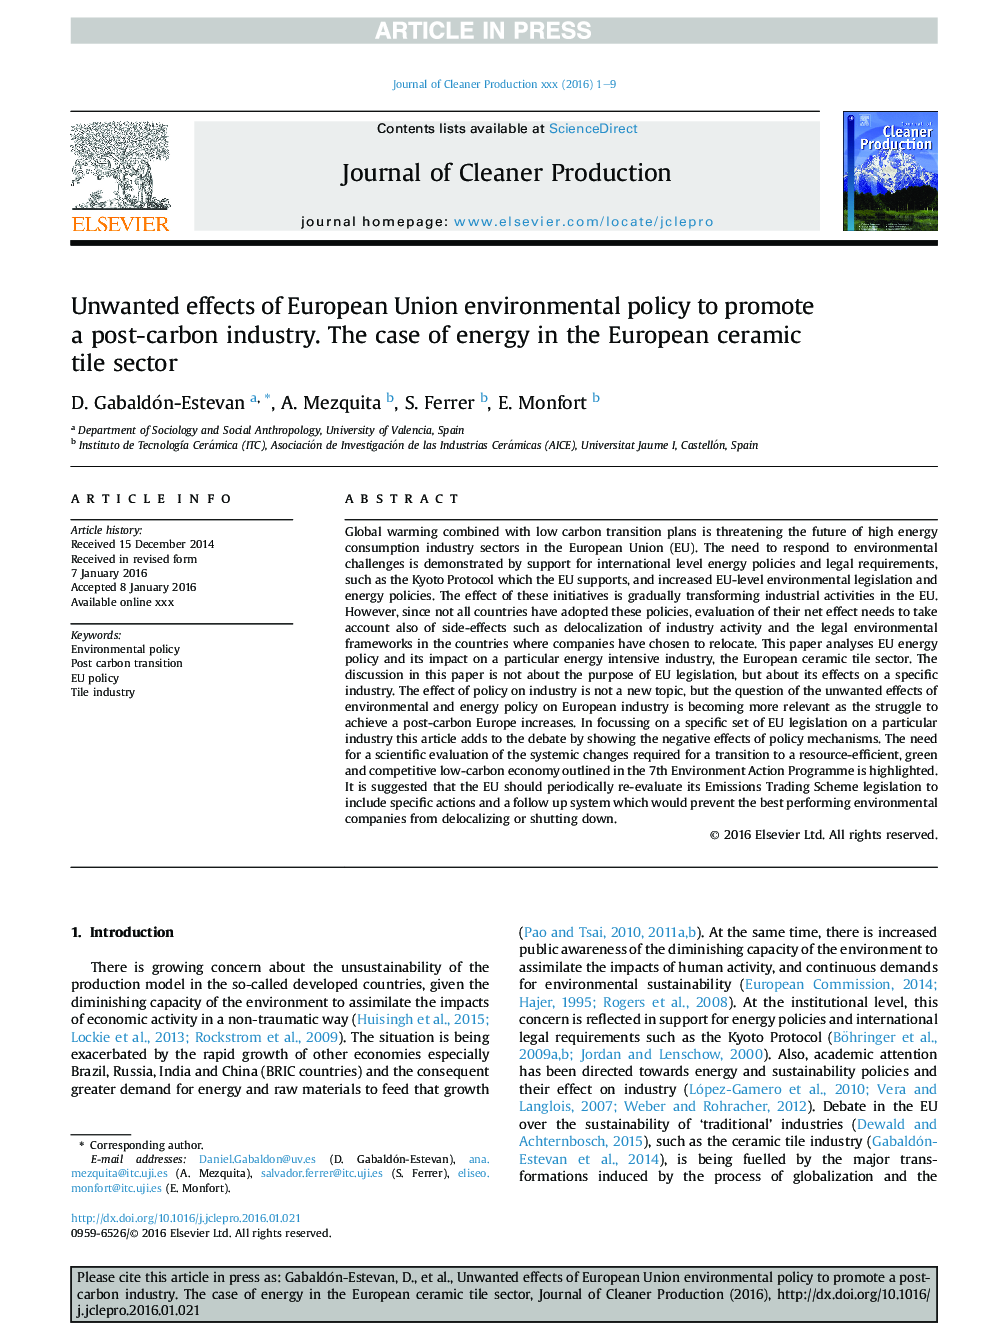 اثرات ناخواسته سیاست زیست محیطی اتحادیه اروپا برای ترویج صنعت پس از کربن. مورد انرژی در بخش اروپایی کاشی سرامیک 